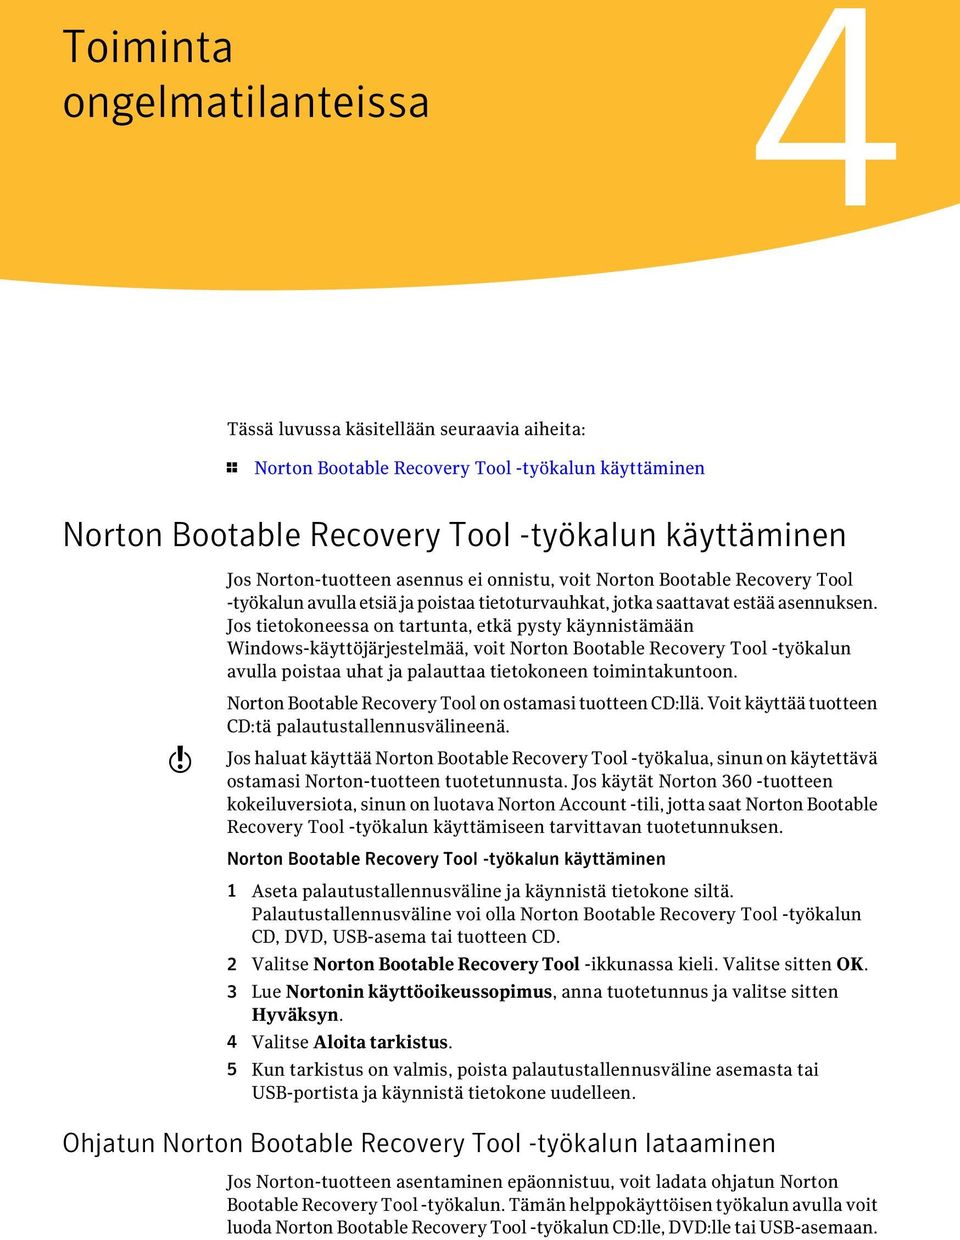 Jos tietokoneessa on tartunta, etkä pysty käynnistämään Windows-käyttöjärjestelmää, voit Norton Bootable Recovery Tool -työkalun avulla poistaa uhat ja palauttaa tietokoneen toimintakuntoon.